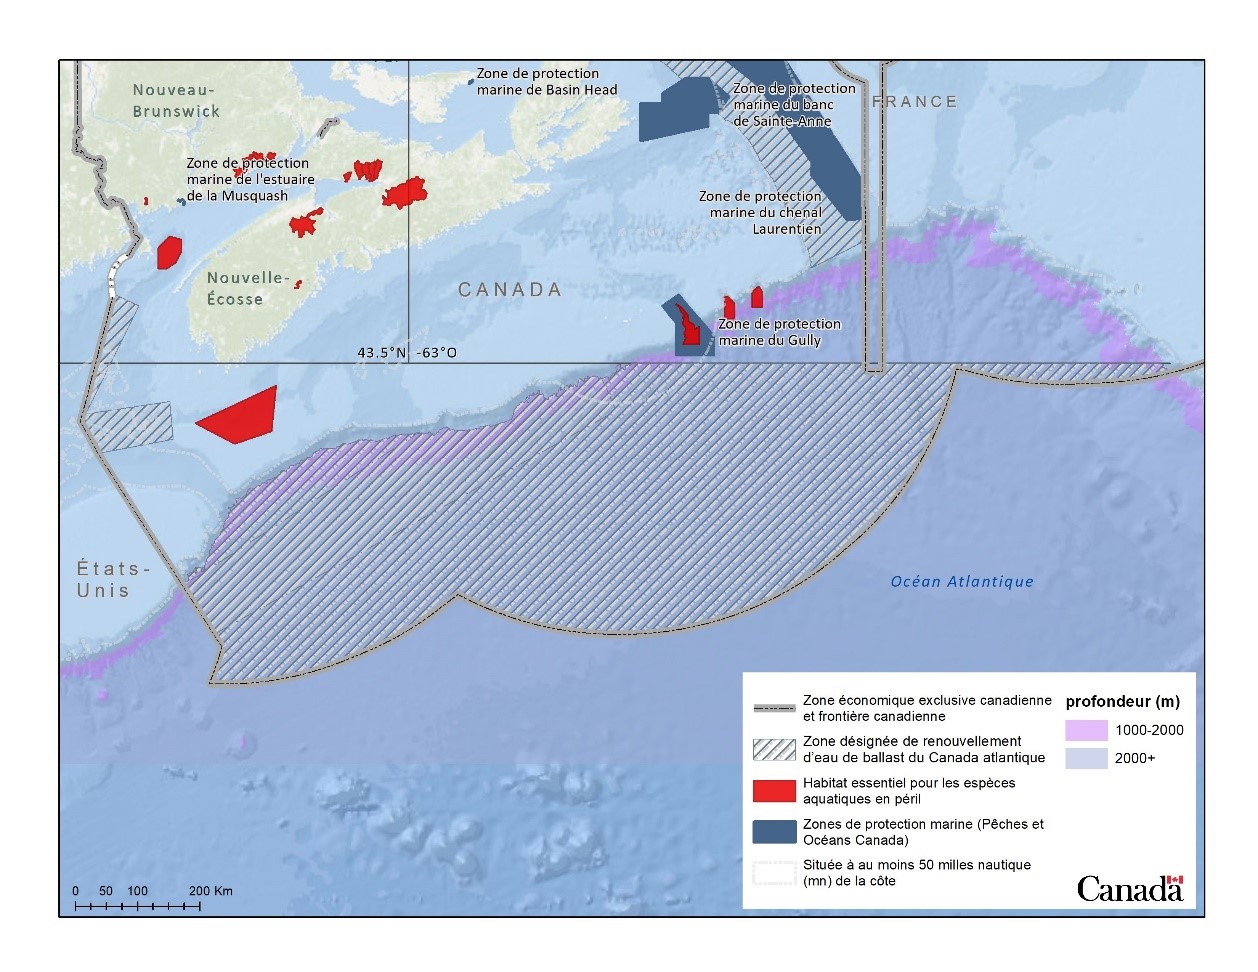 Figure 2. Zones désignées de renouvellement d’eau de ballast du Canada atlantique